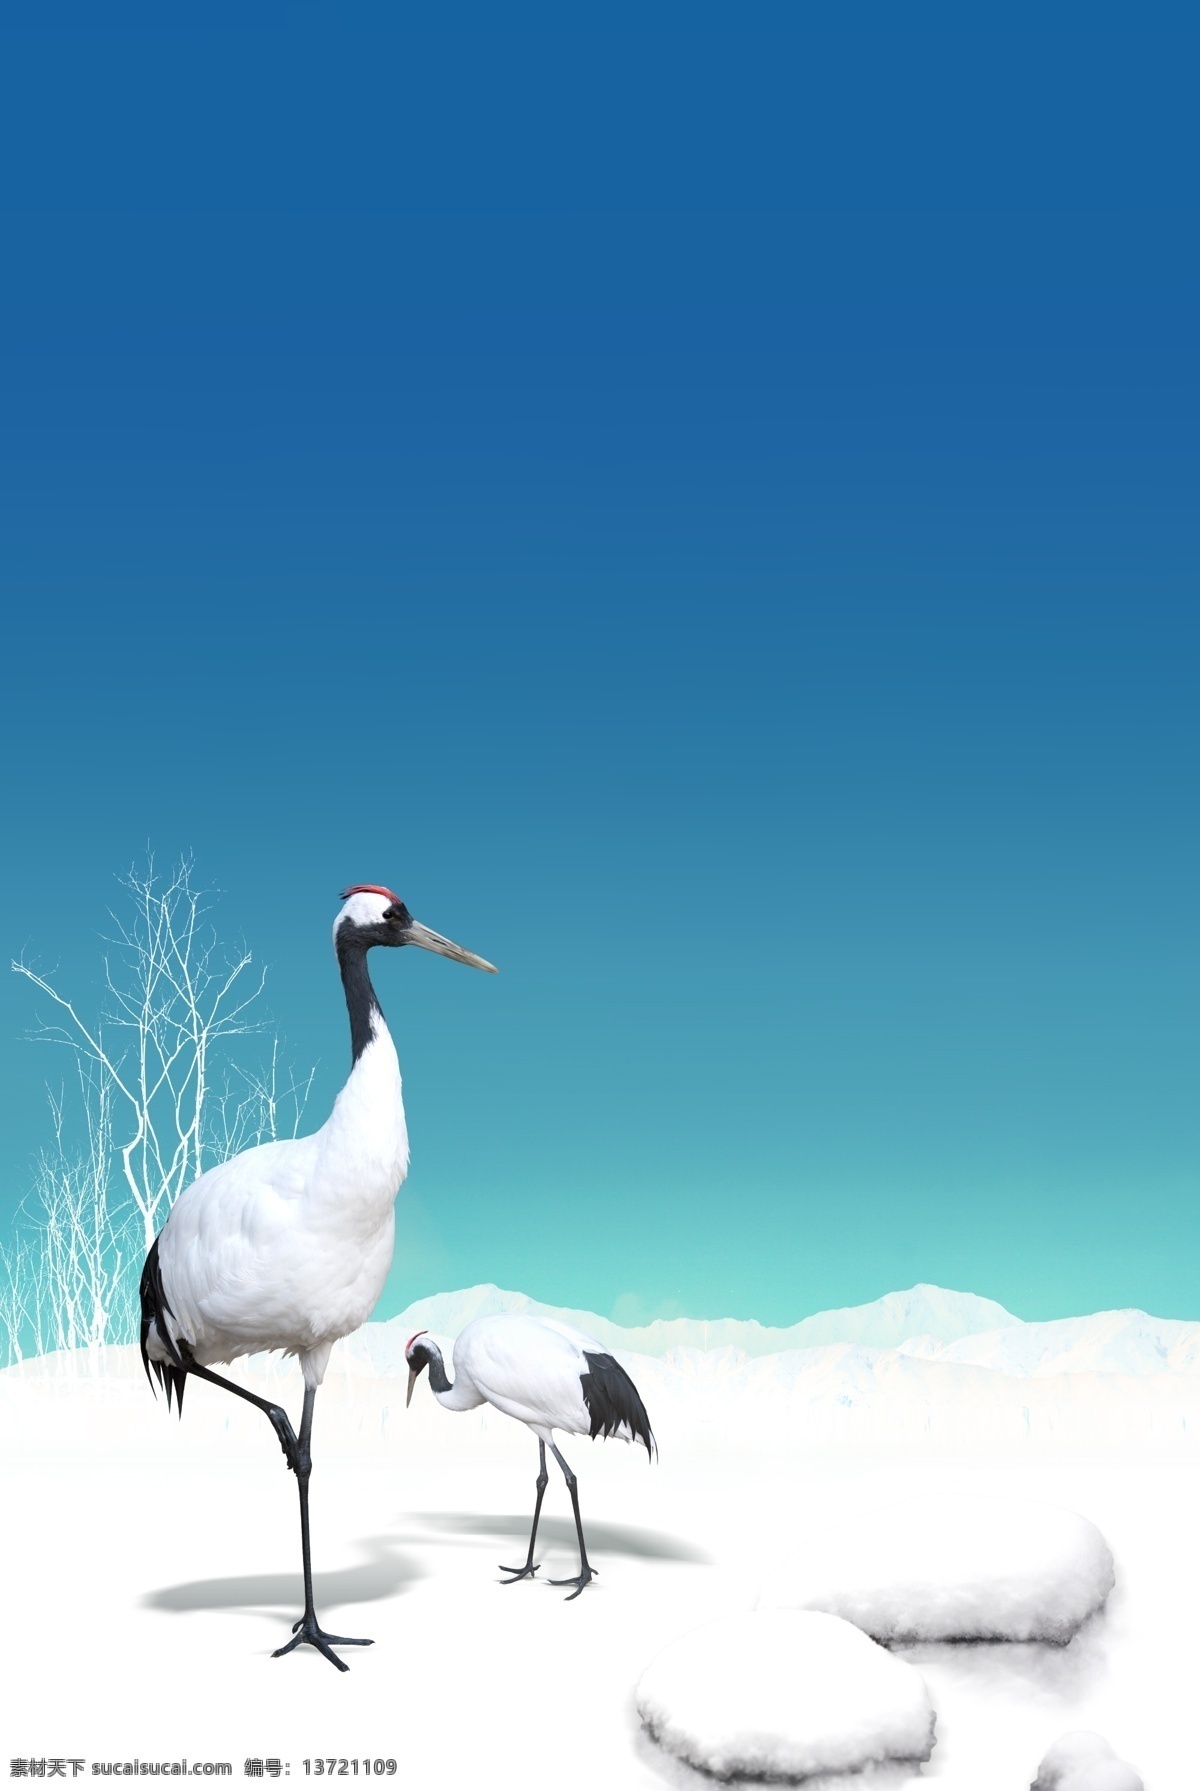 蓝色天空 雪地 背景 丹顶鹤 动物 雪地背景 psd源文件